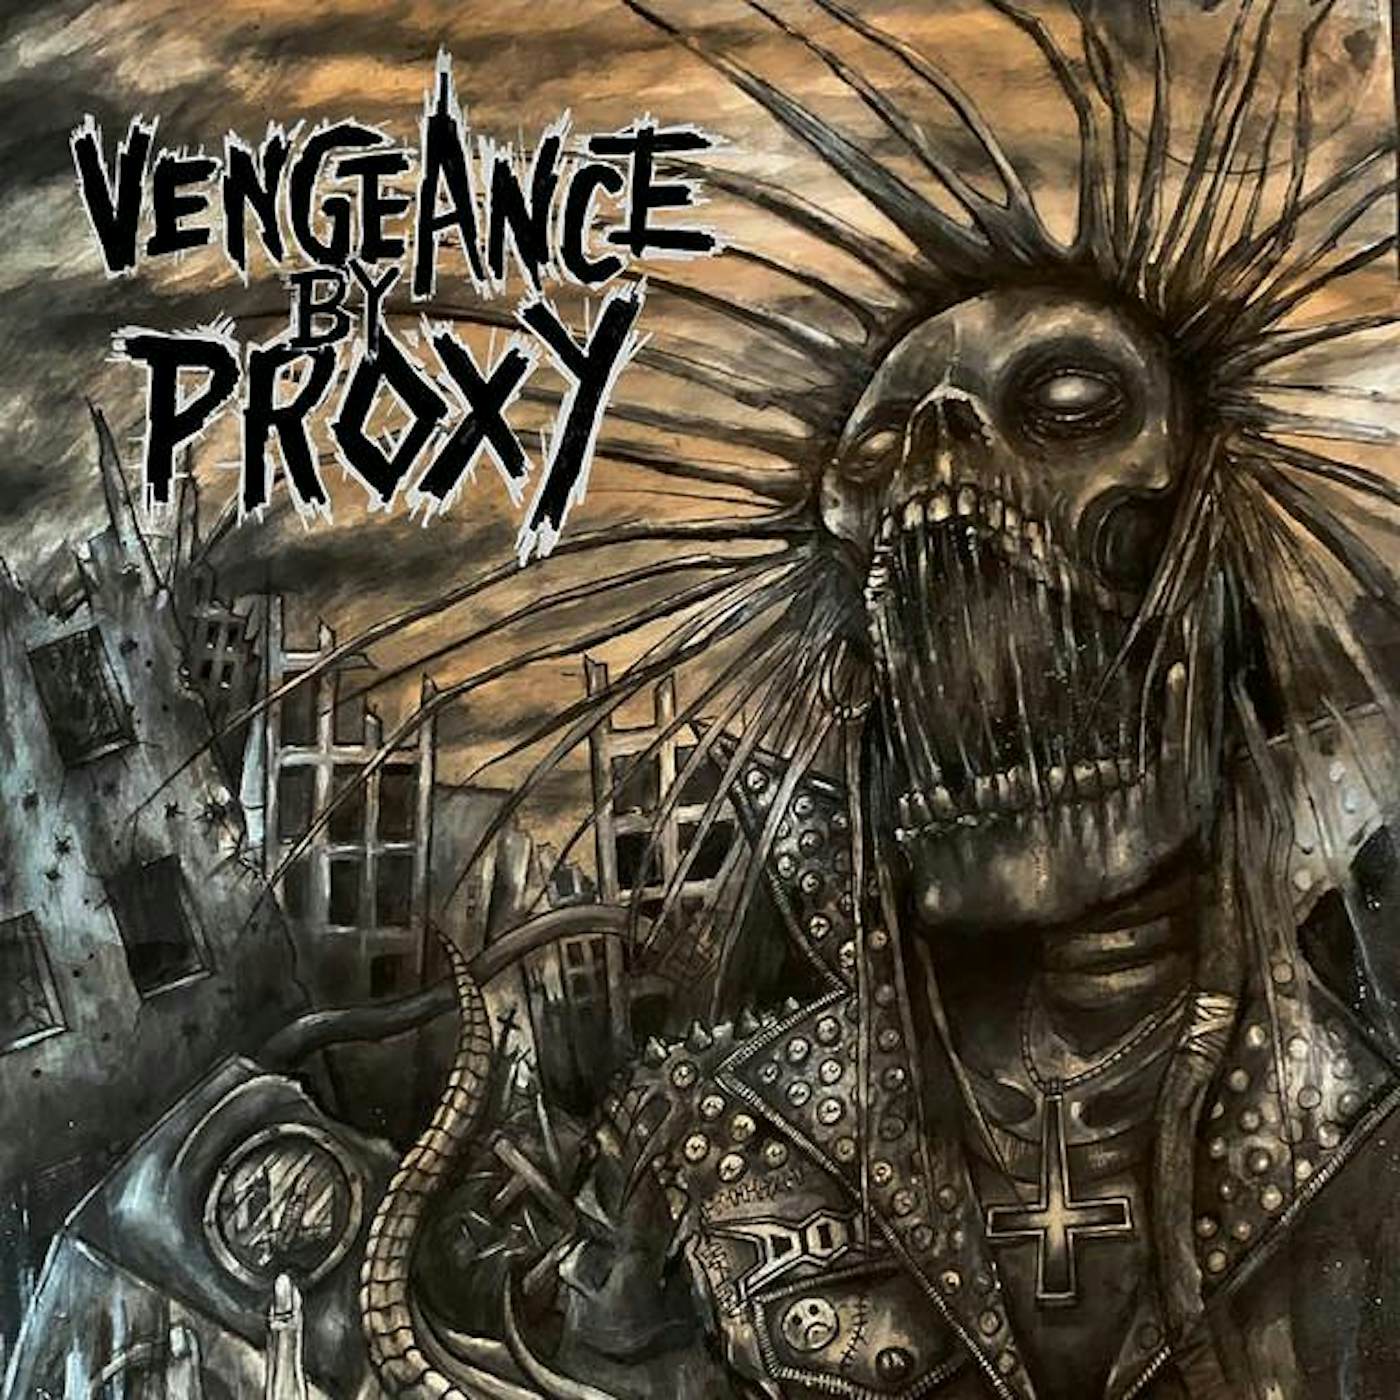 Vengeance by Proxy